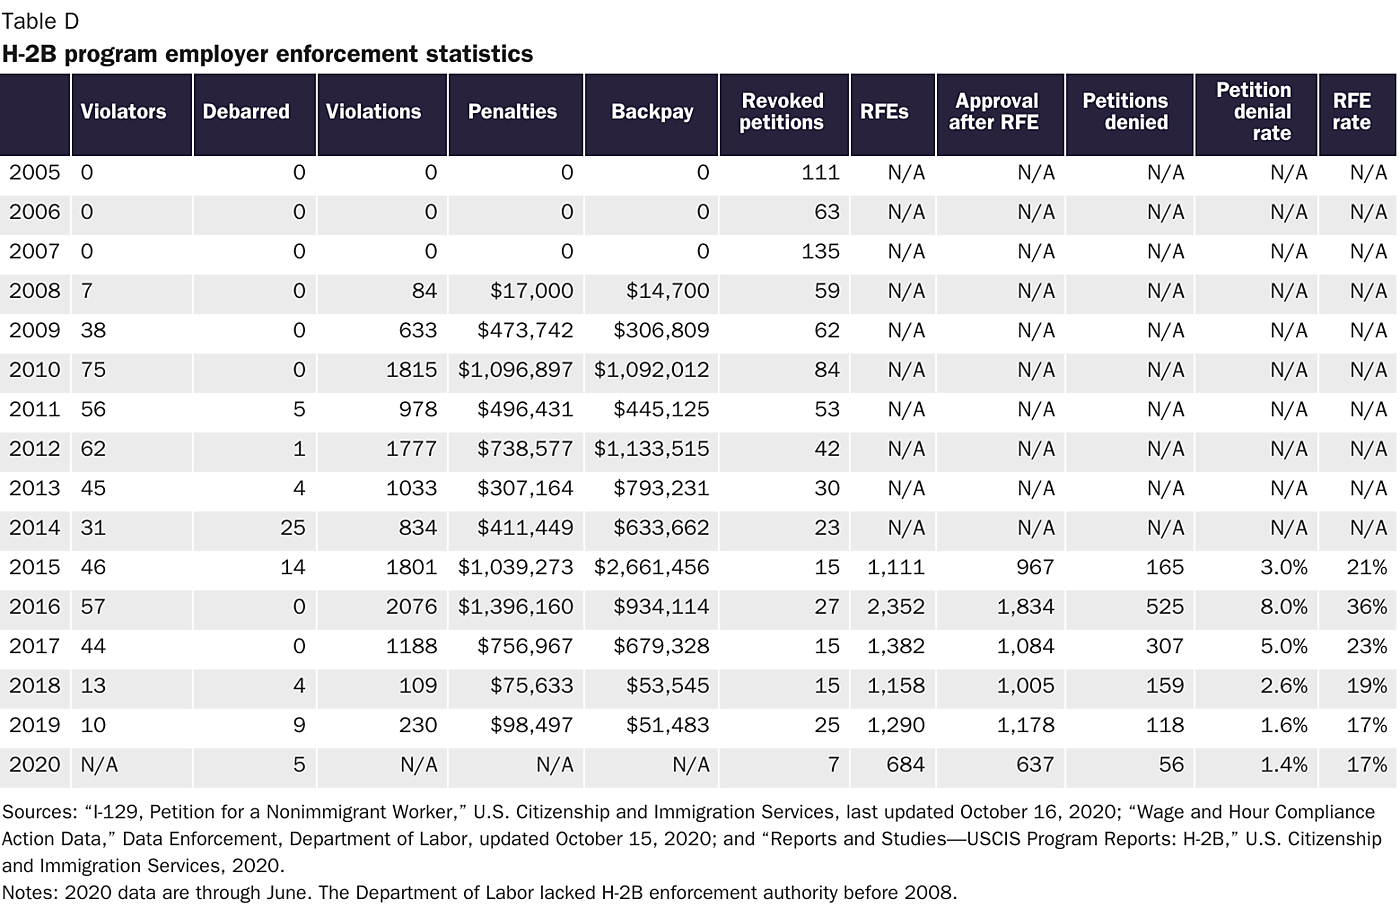 Table D: Program Employer Enforcement Statistics